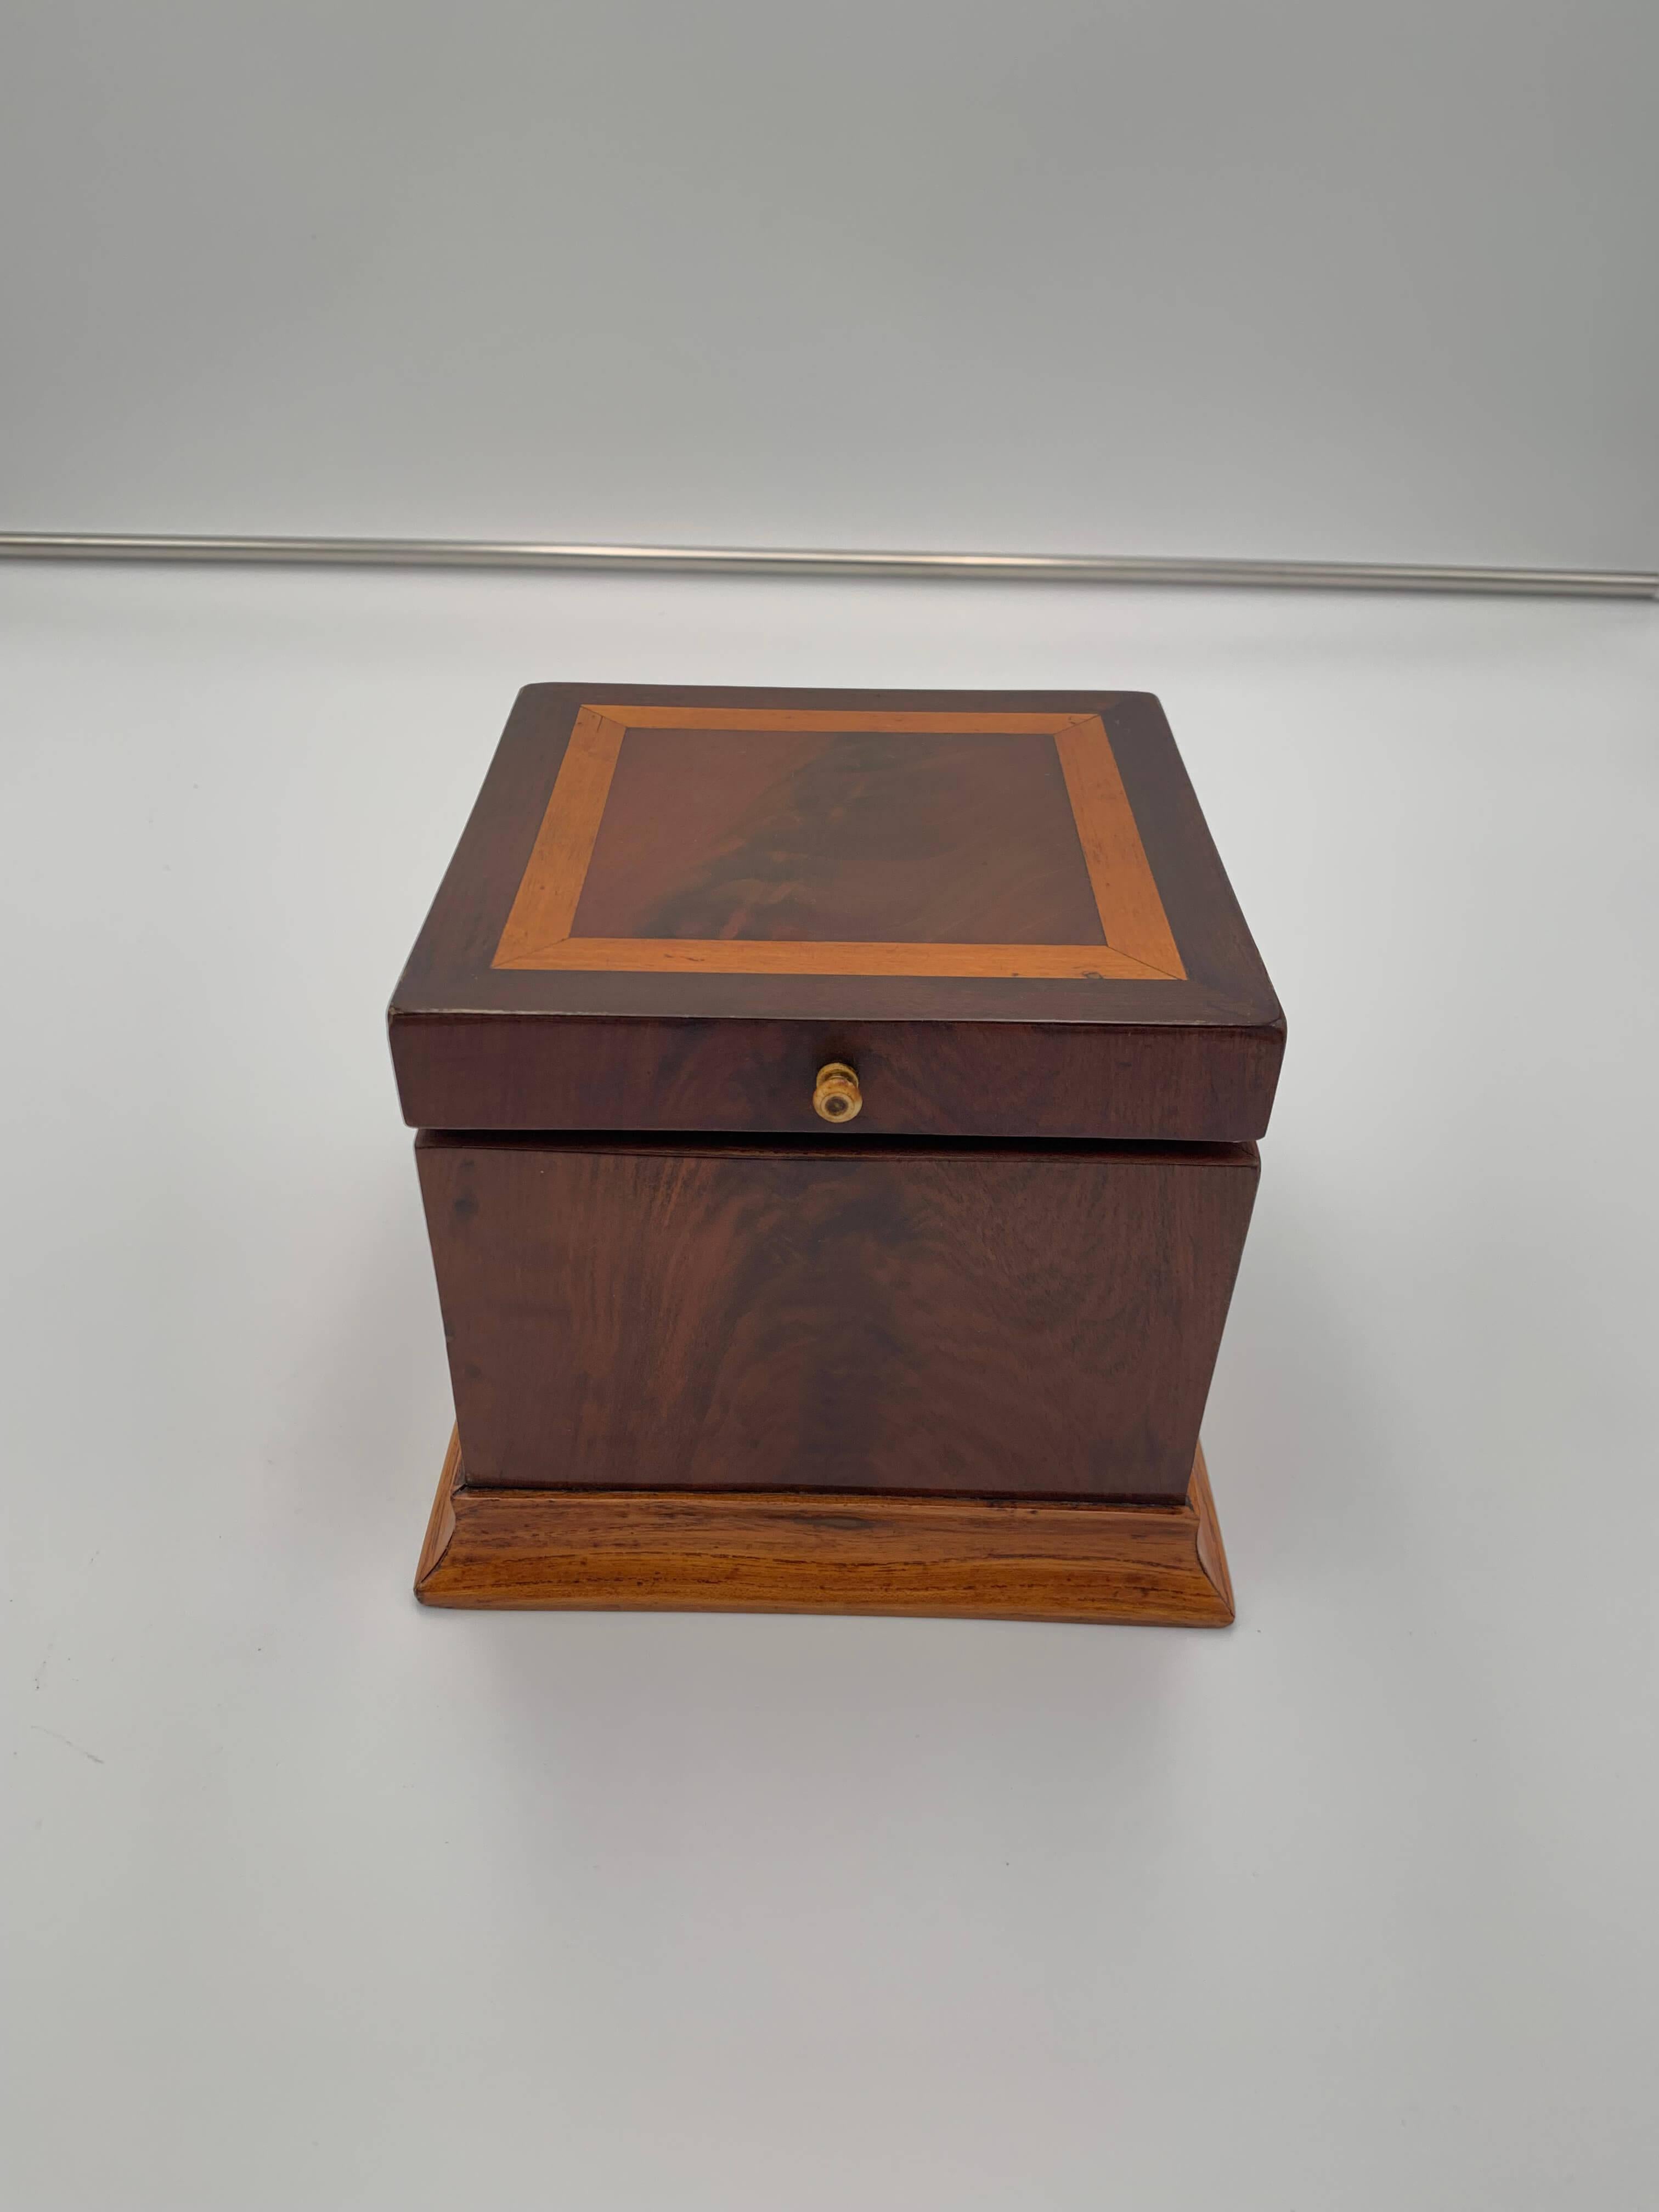 Boîte Biedermeier cubique, acajou et érable, Autriche vers 1840

Rare boîte décorative de forme cubique de la période Biedermeier.
Plaqué acajou avec incrustations en érable. Base en chêne. Restauré et poli à la main à la